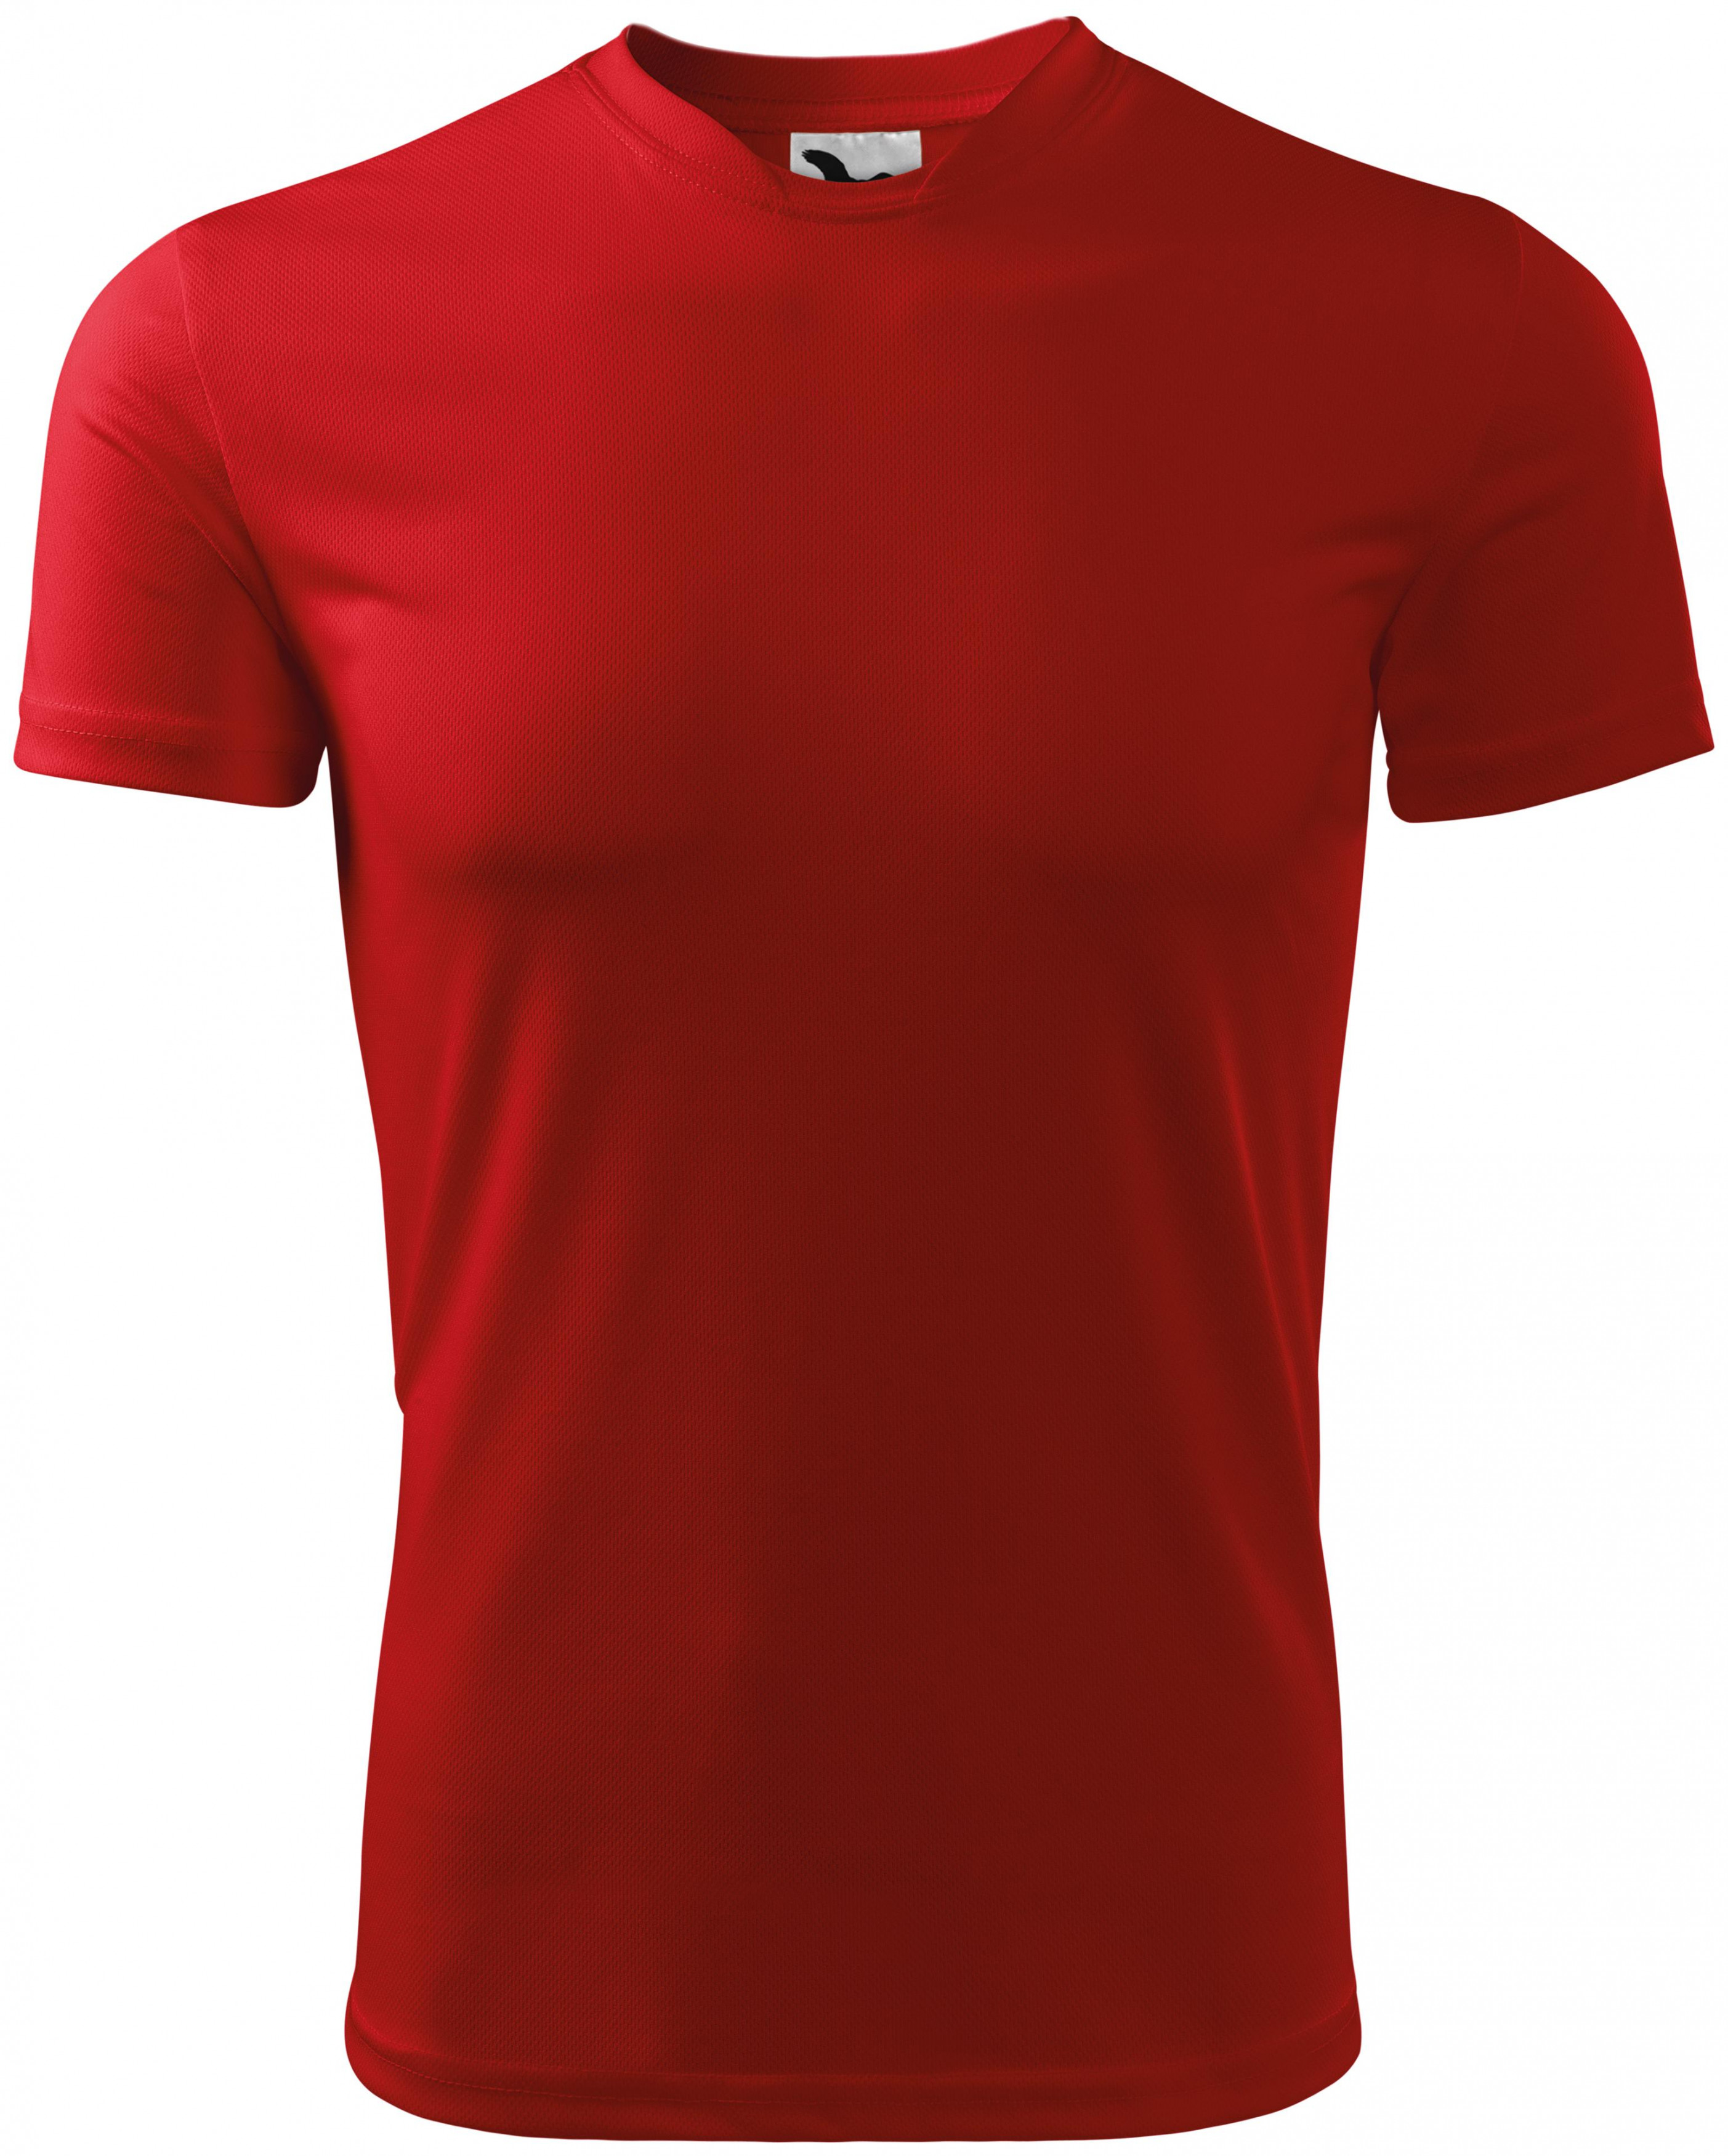 Športové tričko detské, červená, 146cm / 10rokov